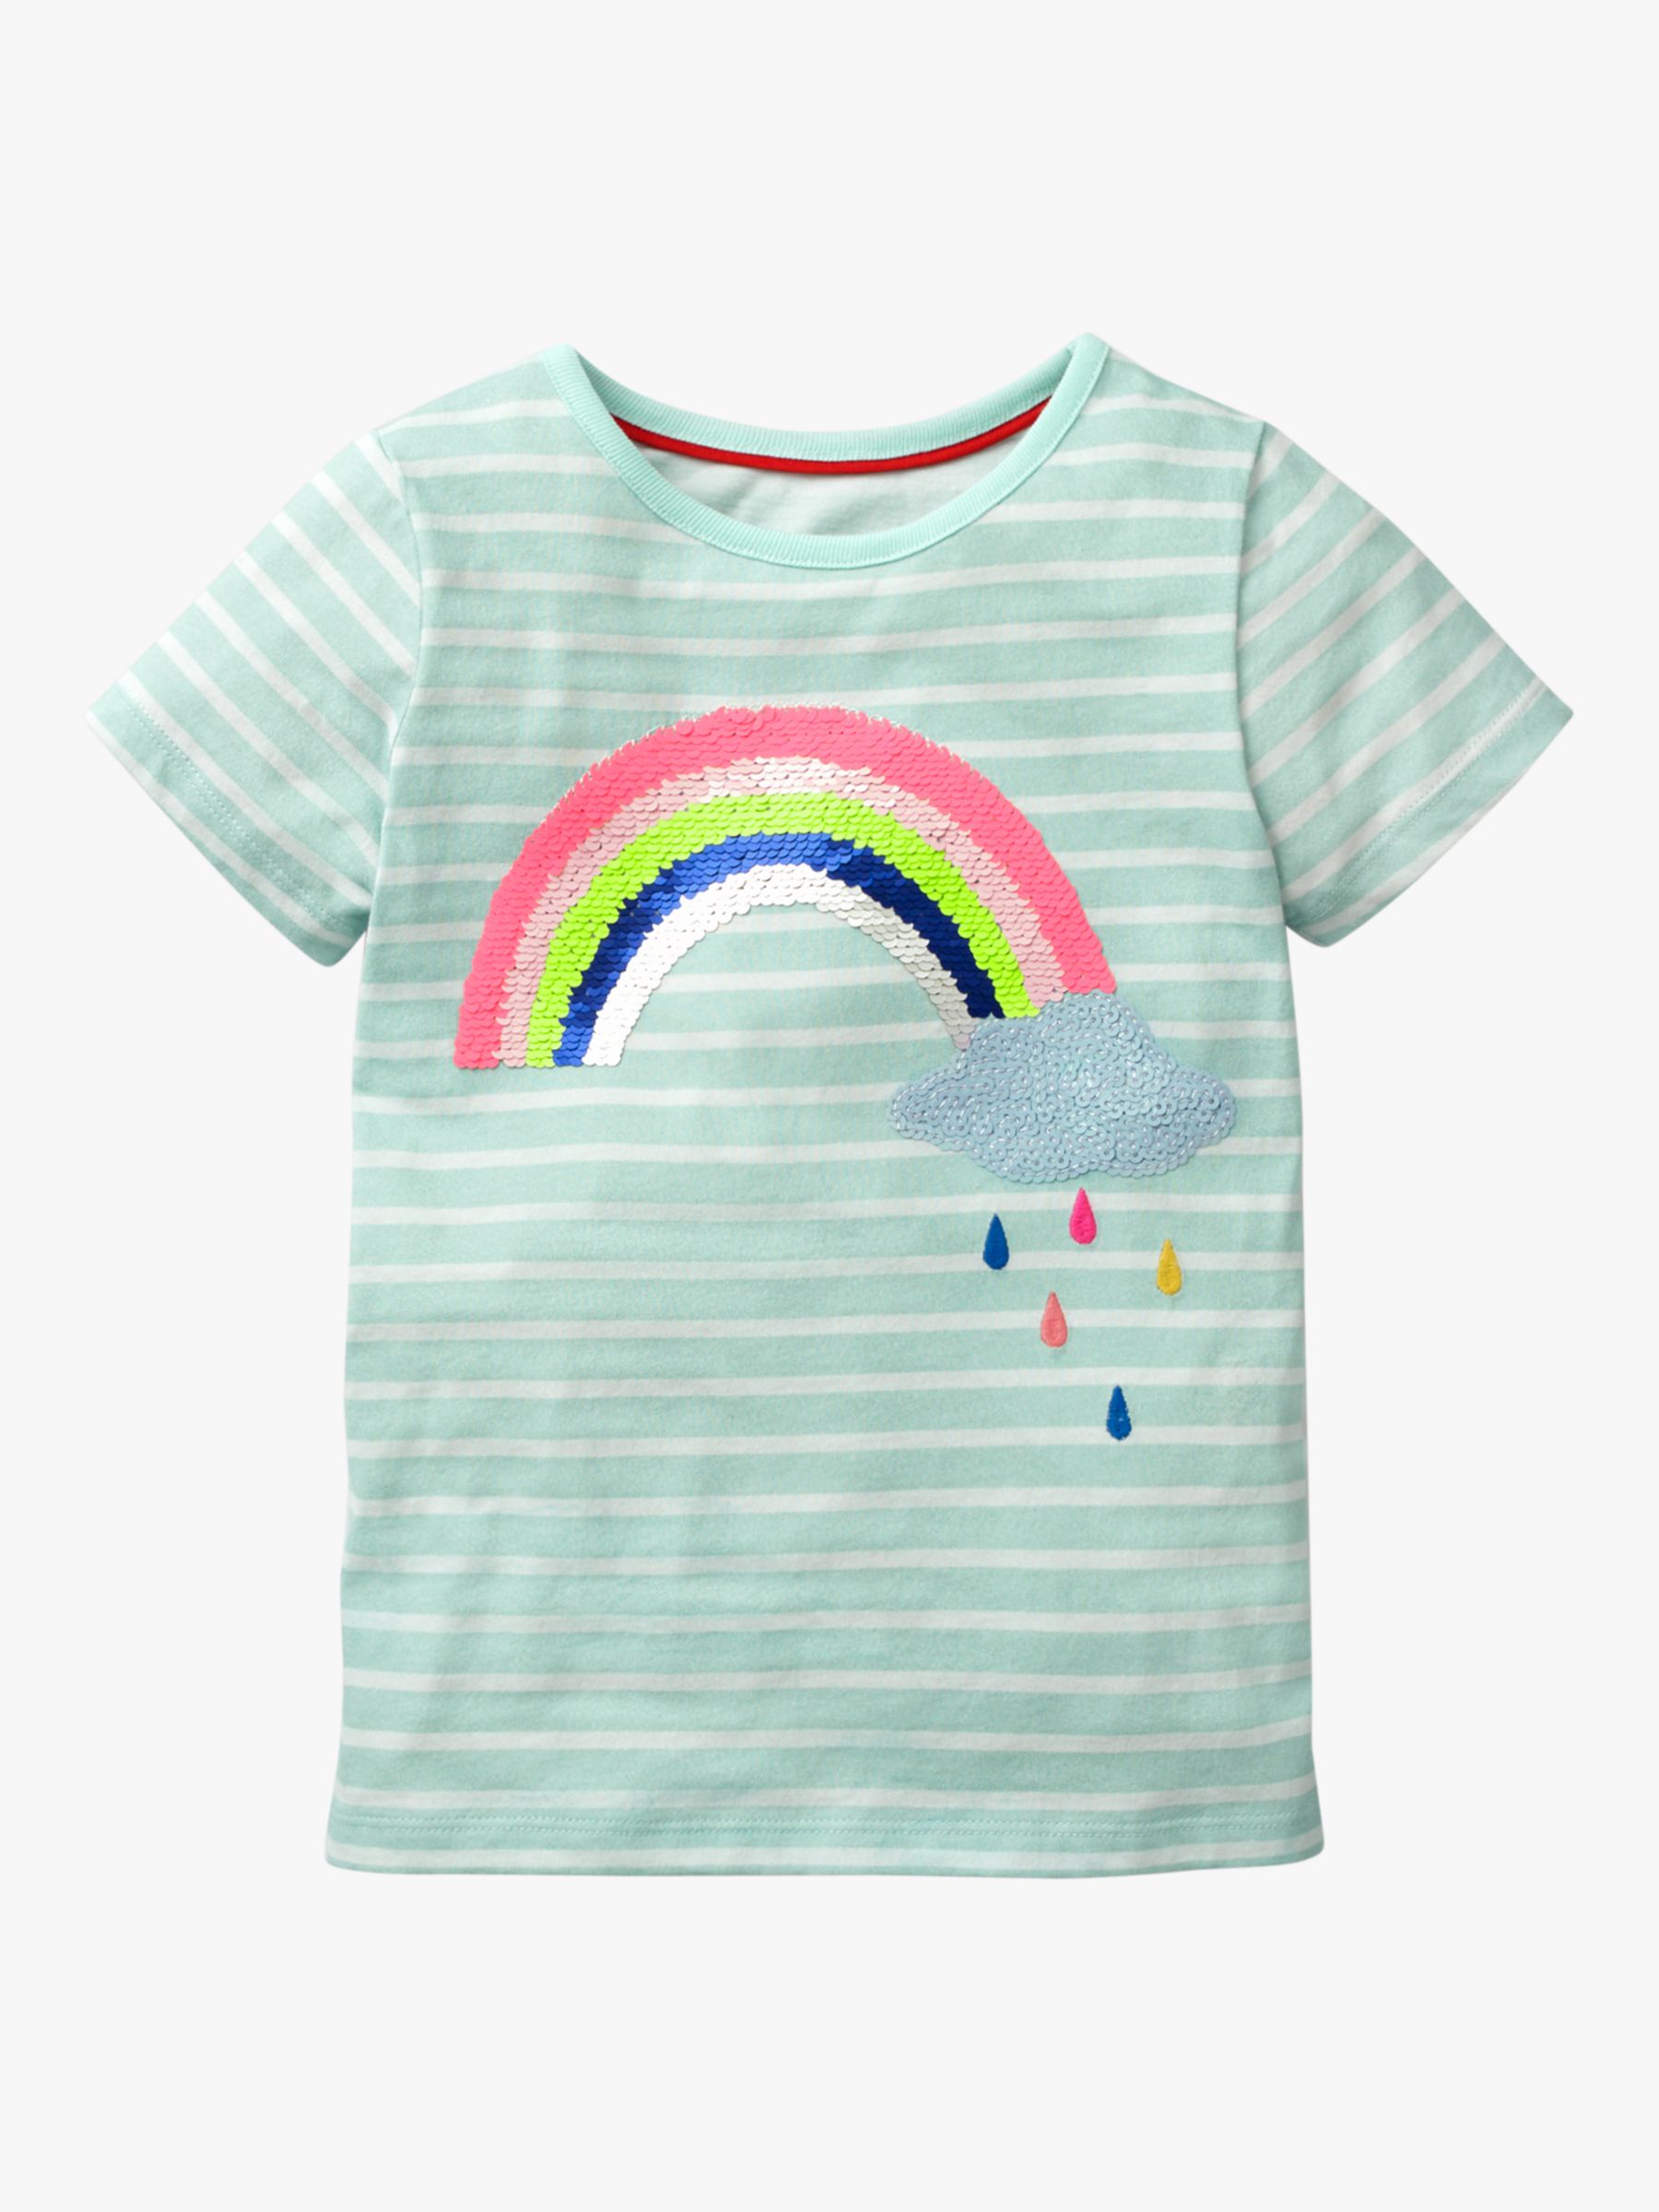 Mini Boden Girls' Sequin Rainbow and Cloud T-Shirt, Light Blue